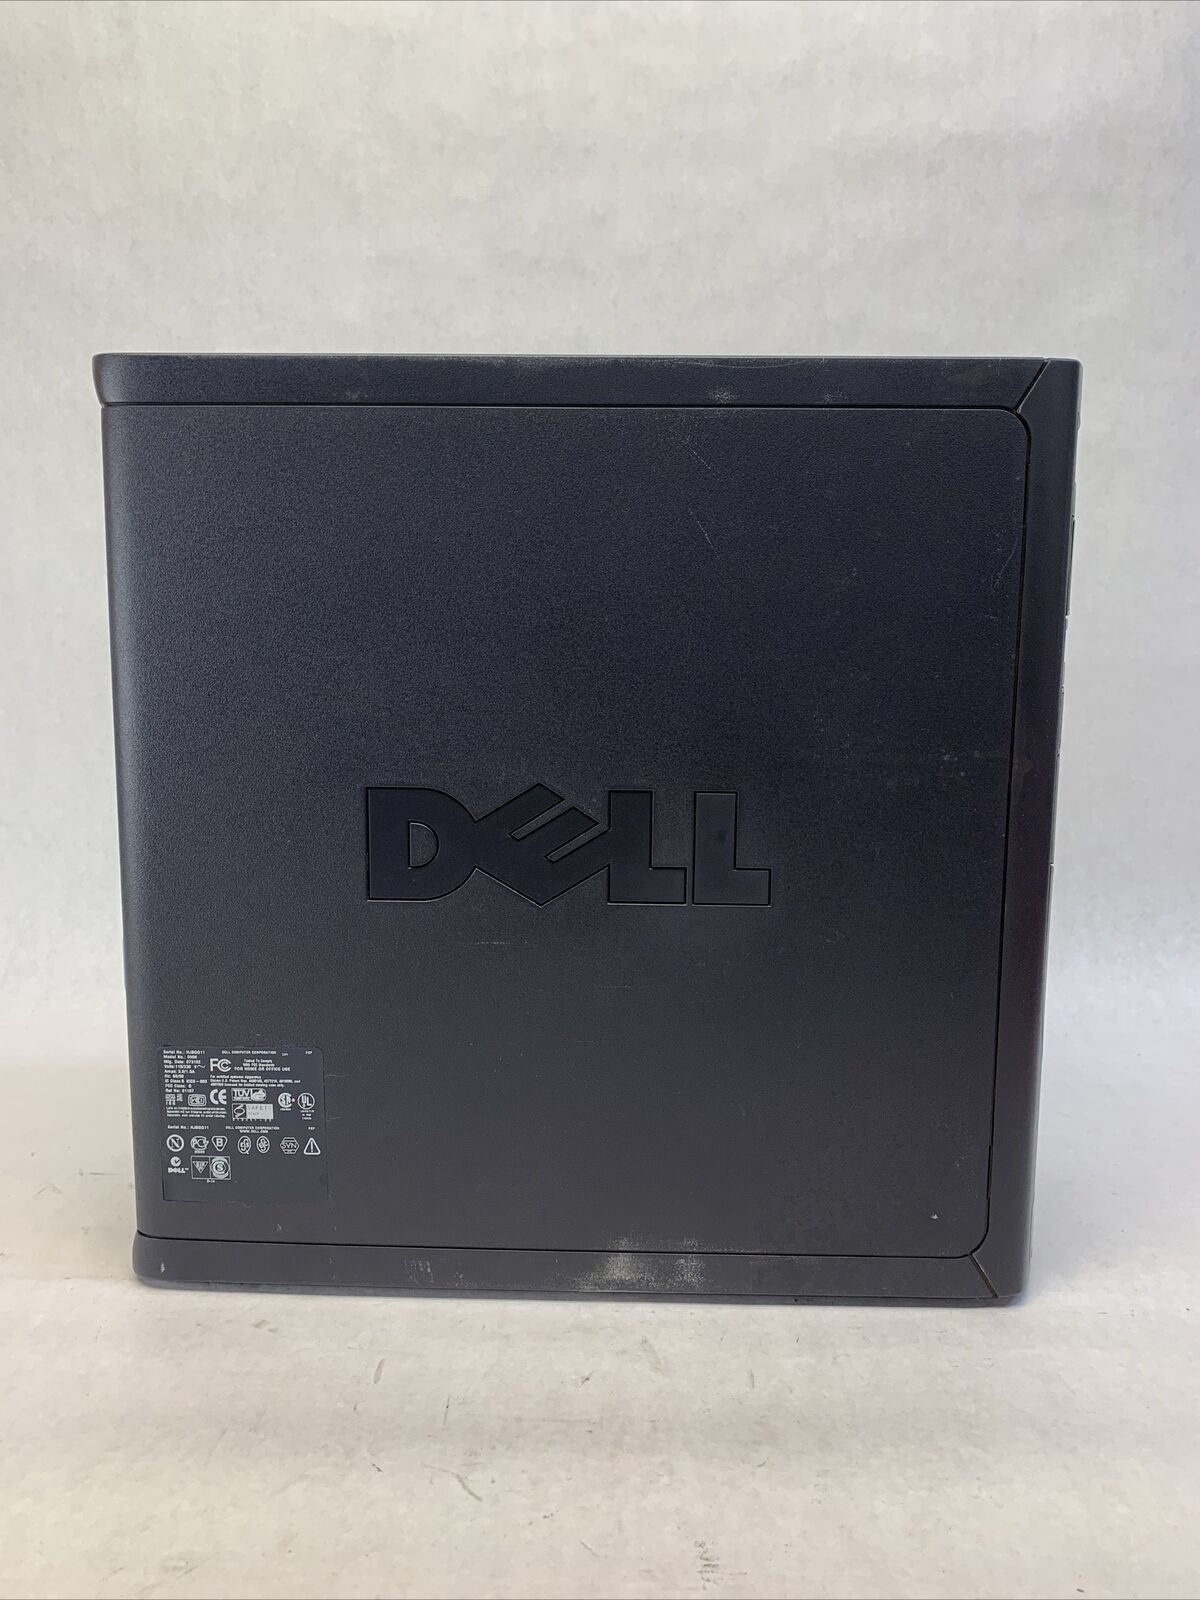 Dell Optiplex GX260 MT Intel Pentium 4 2GHz 1GB RAM No HDD No OS w/04-2488-001